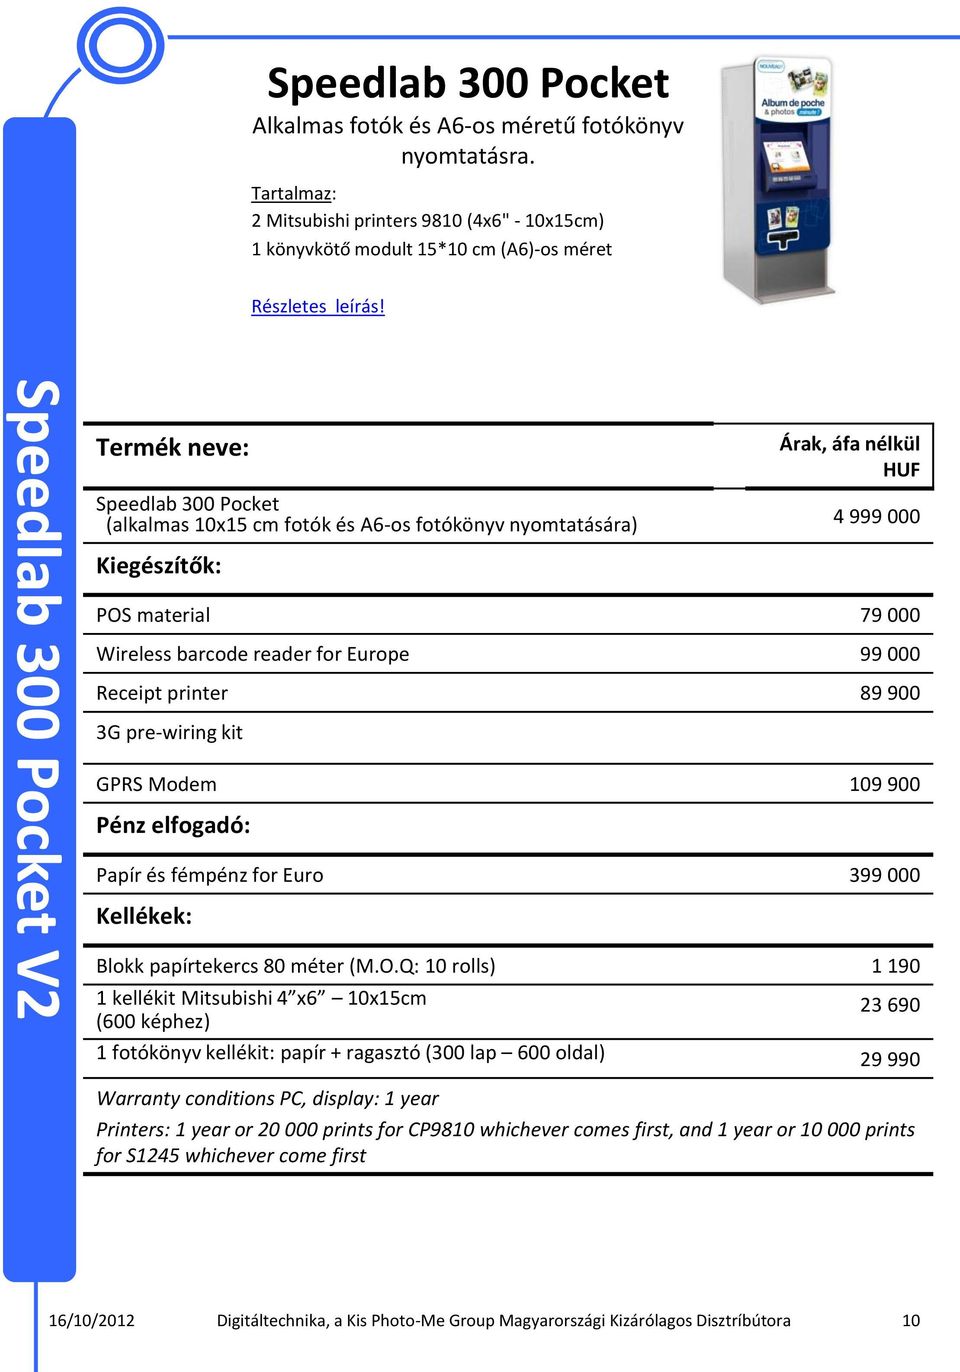 Kiegészítők: POS material 79 000 Wireless barcode reader for Europe 99 000 Receipt printer 89 900 3G pre-wiring kit GPRS Modem 109 900 Pénz elfogadó: Papír és fémpénz for Euro 399 000 Kellékek: Blokk